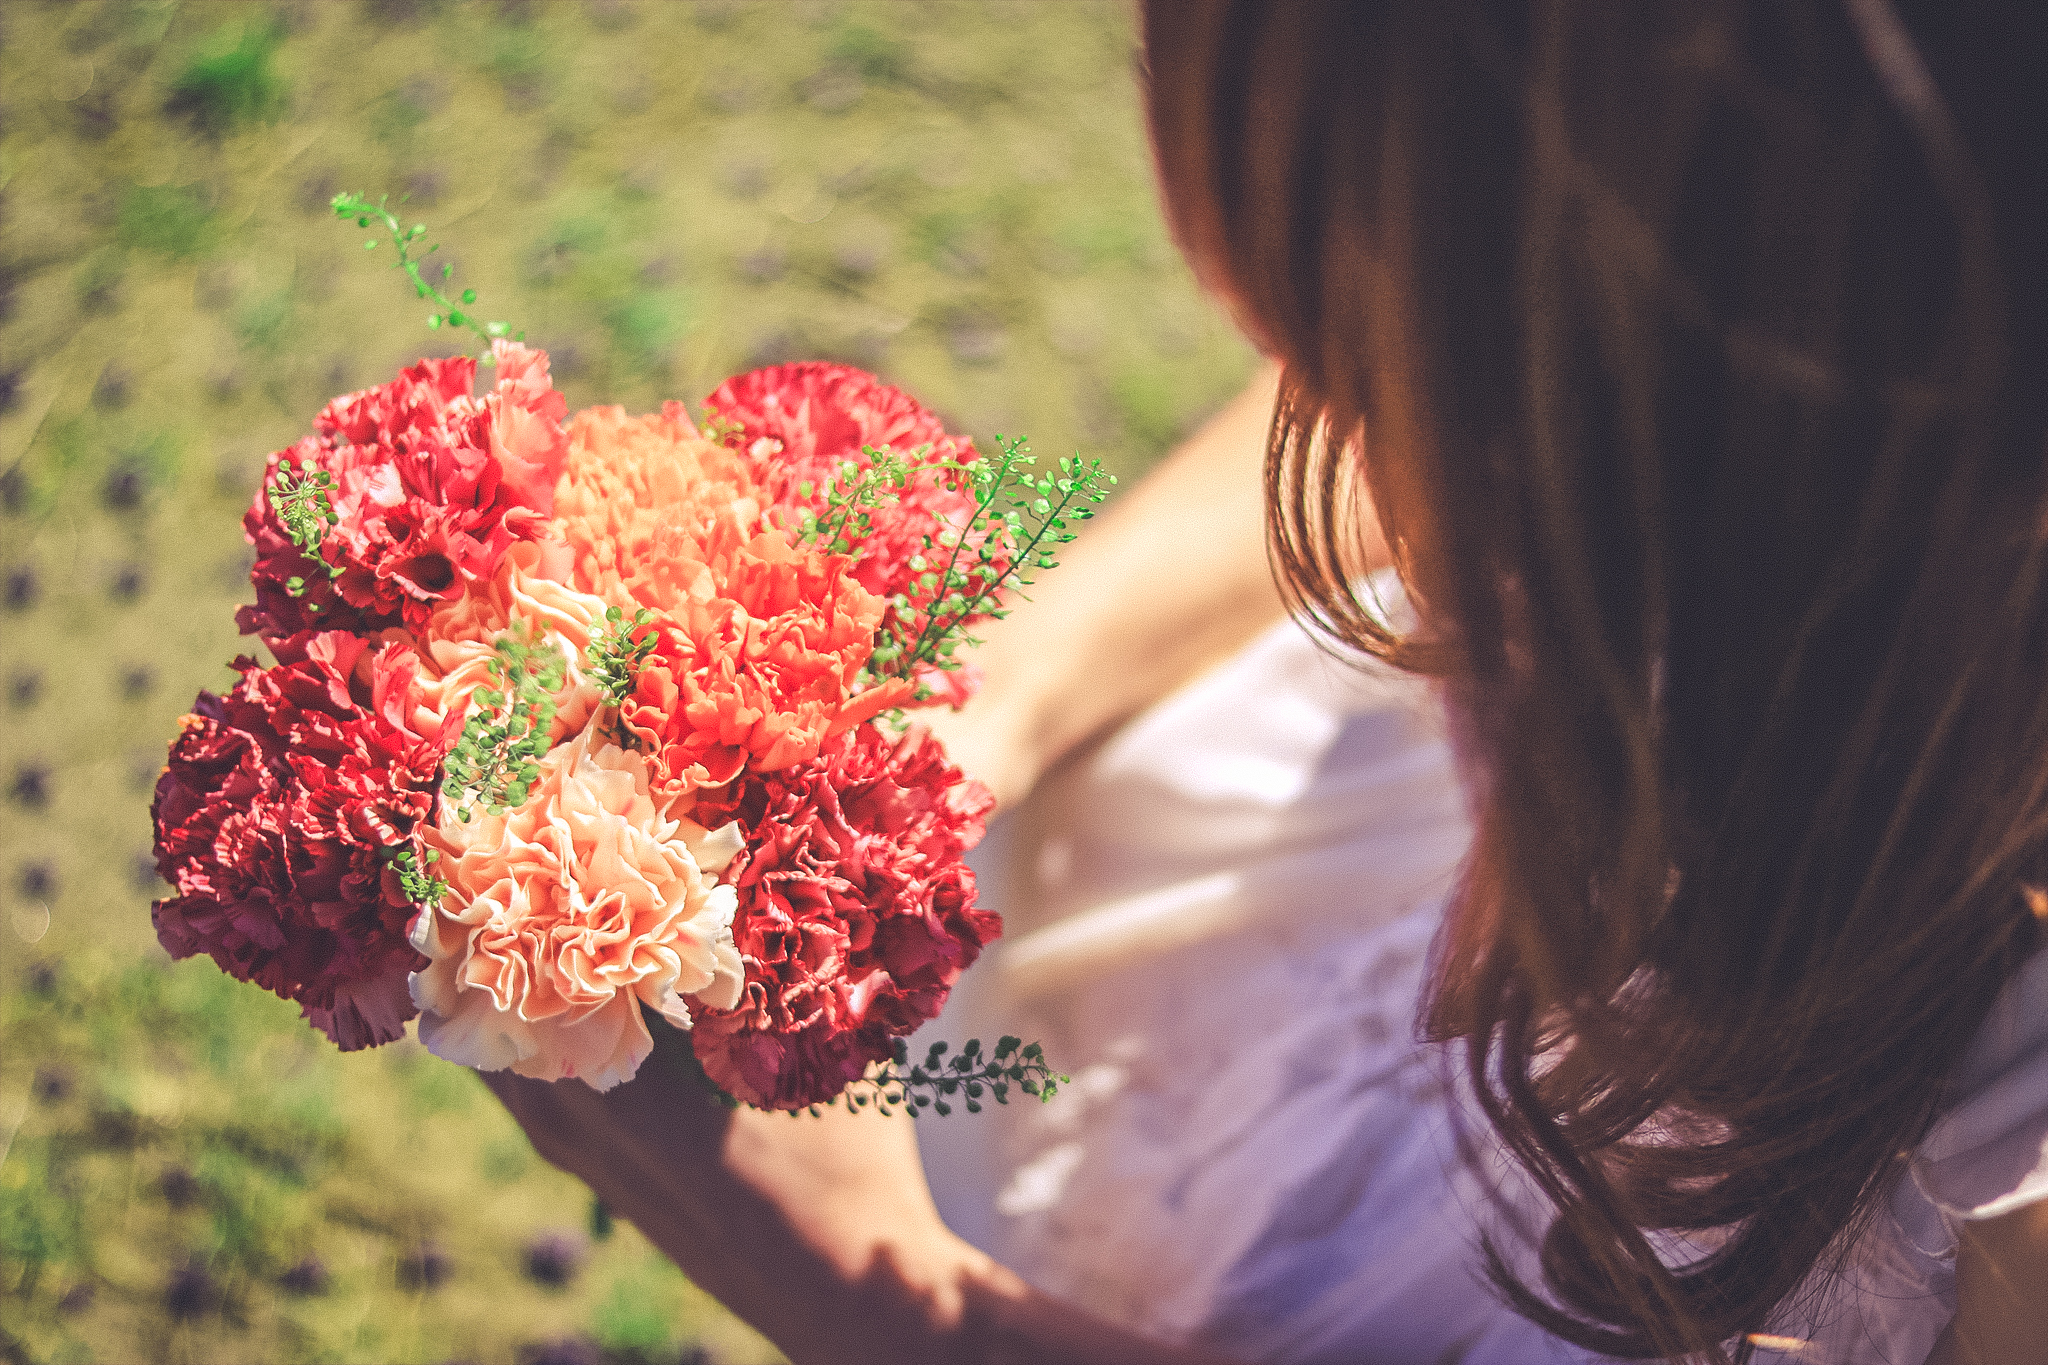 今年はやってみよう バレンタインに贈る花束にオススメの花 切花情報サイト ハナラボノート